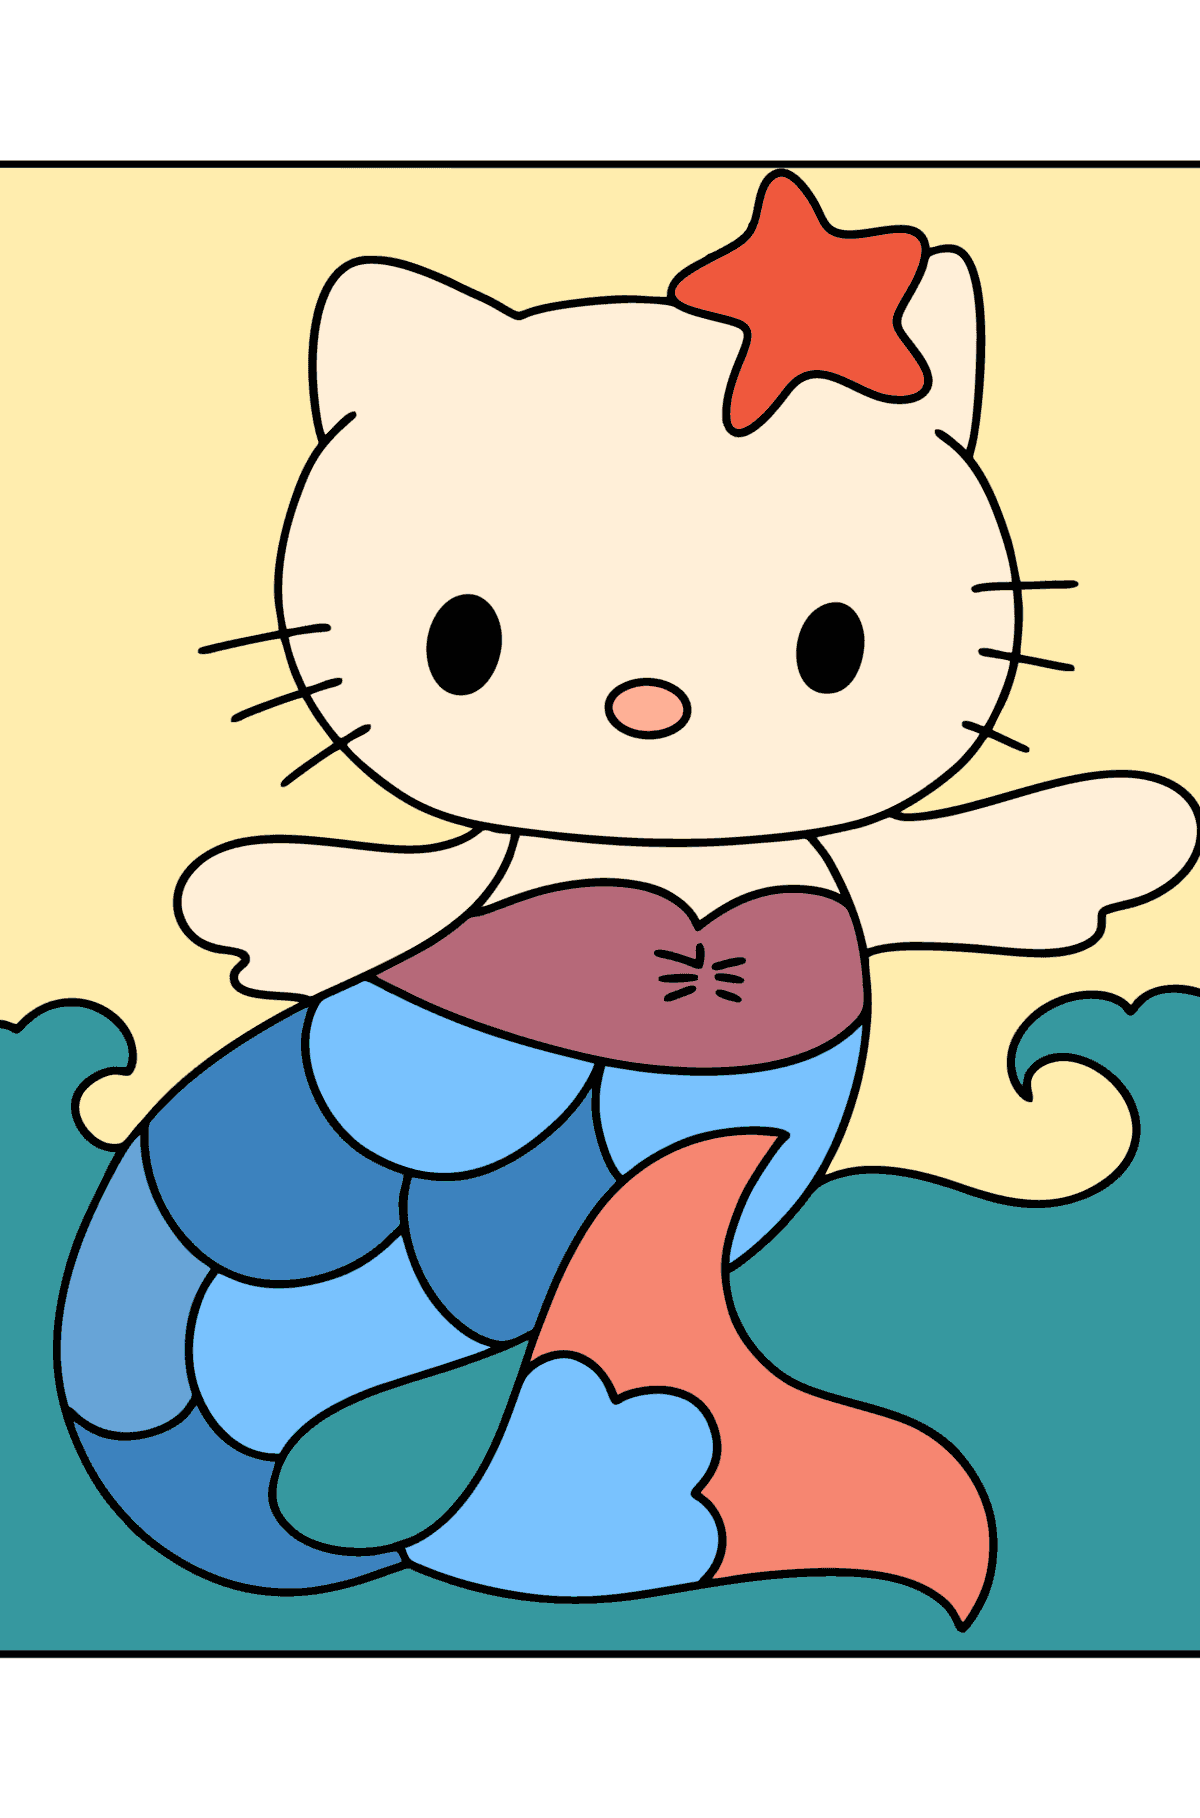 Tegning til fargelegging Hello Kitty havfrue - Tegninger til fargelegging for barn